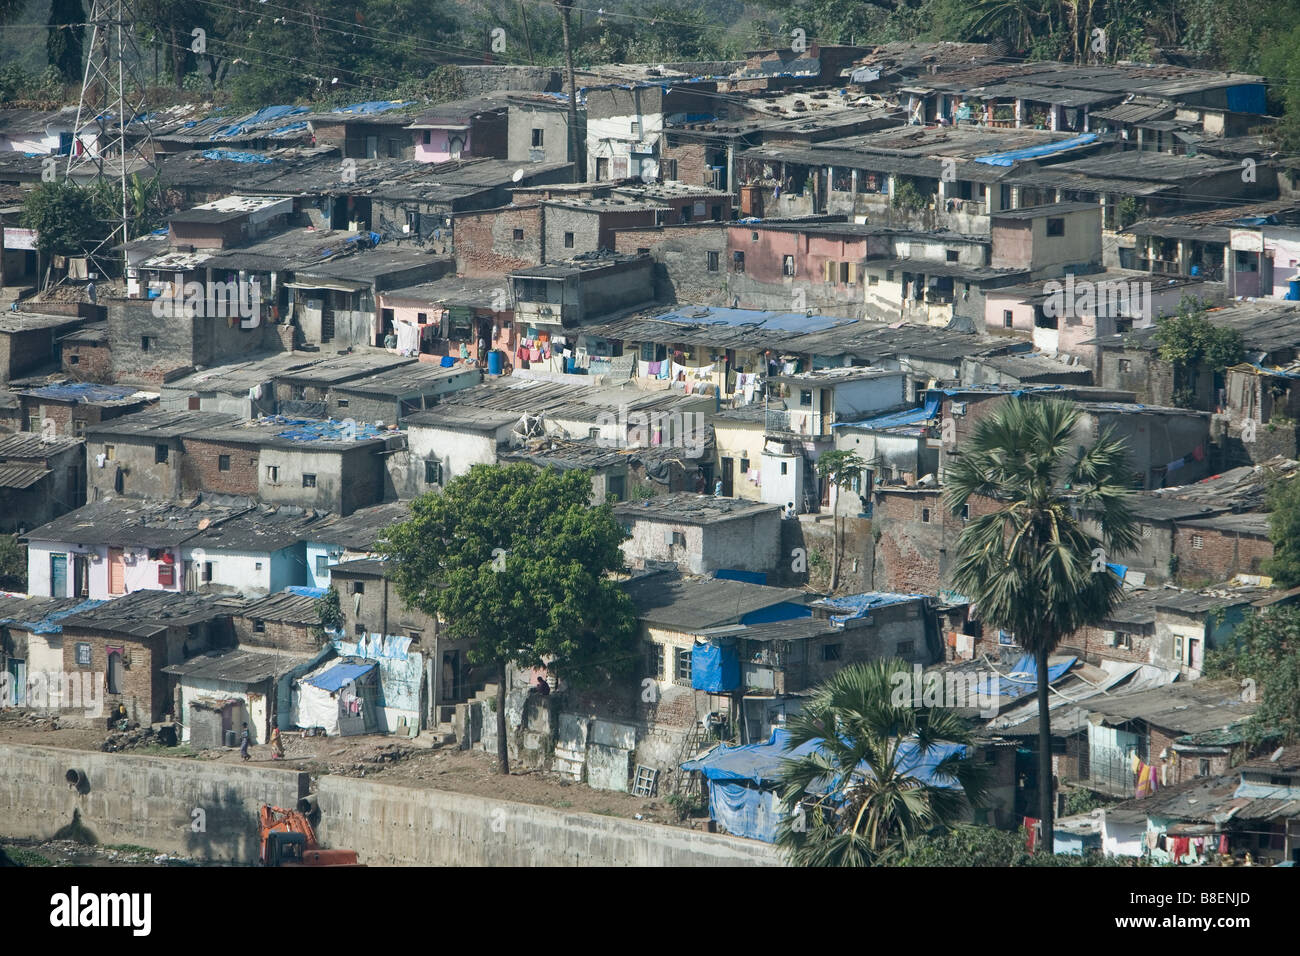 Slums in Mumbai, India Stock Photo